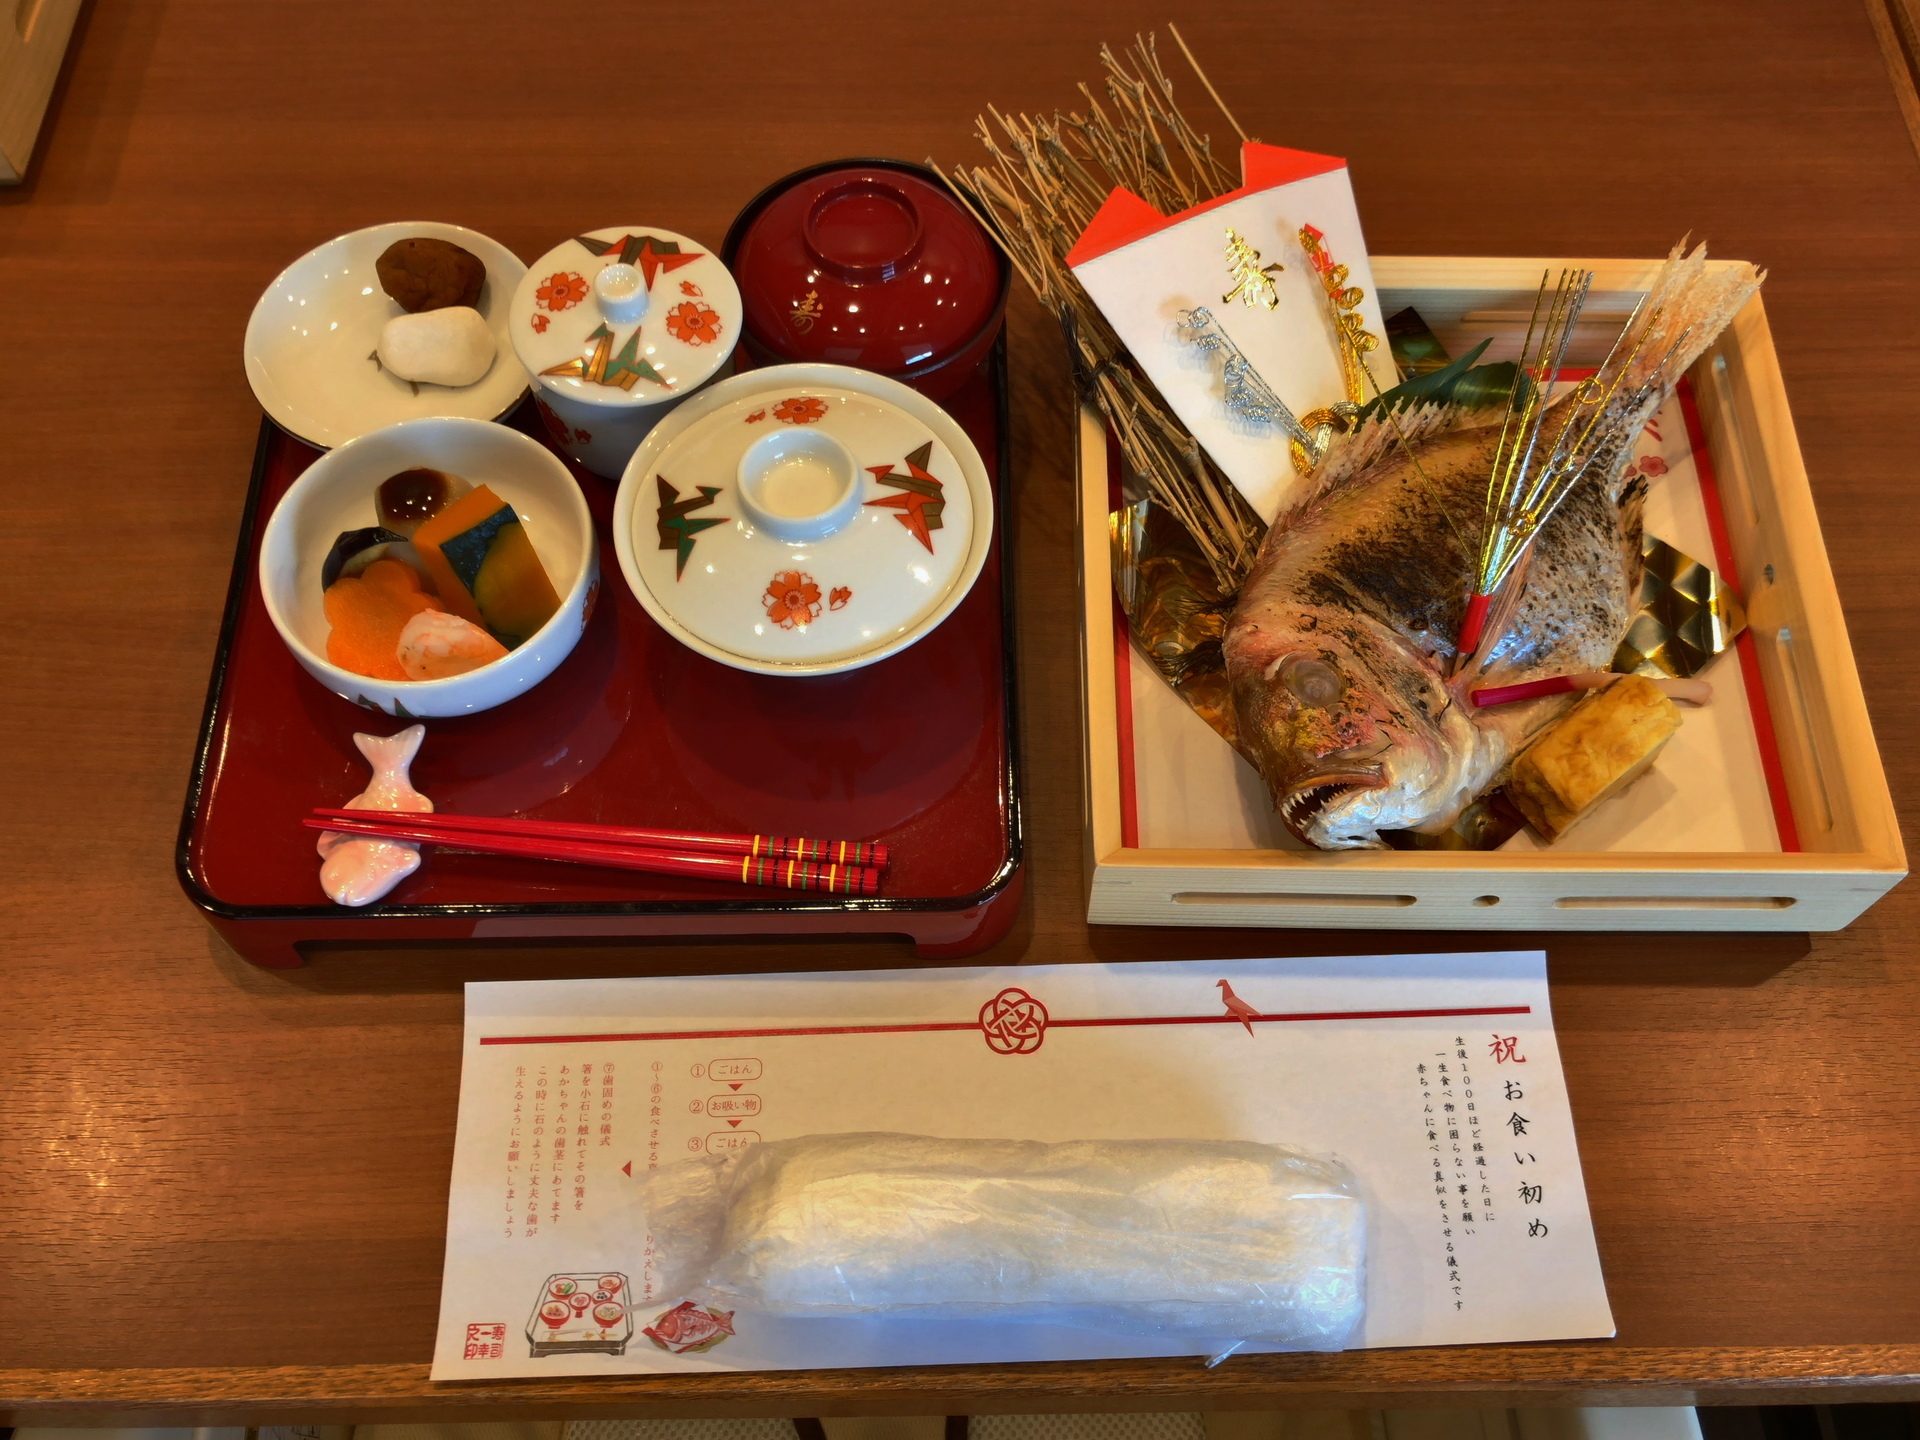 一幸 袖ケ浦店の食事 Ogu S Blog かずさ便り ちょっとだけpcの話も